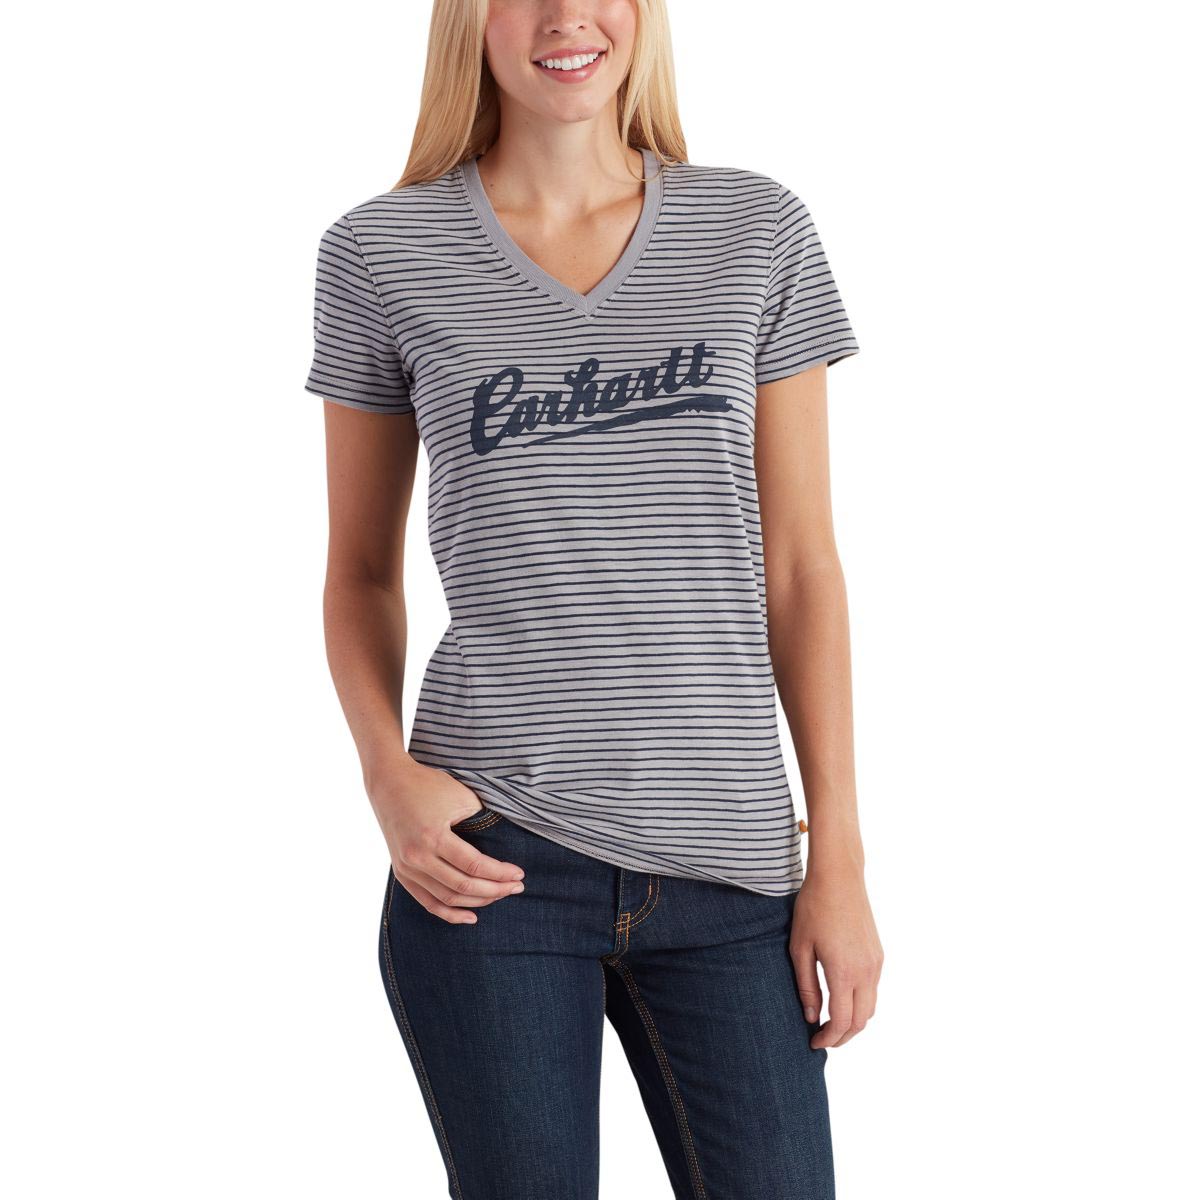 Carhartt Women's Wellton Short Sleeve Striped Logo T Shirt